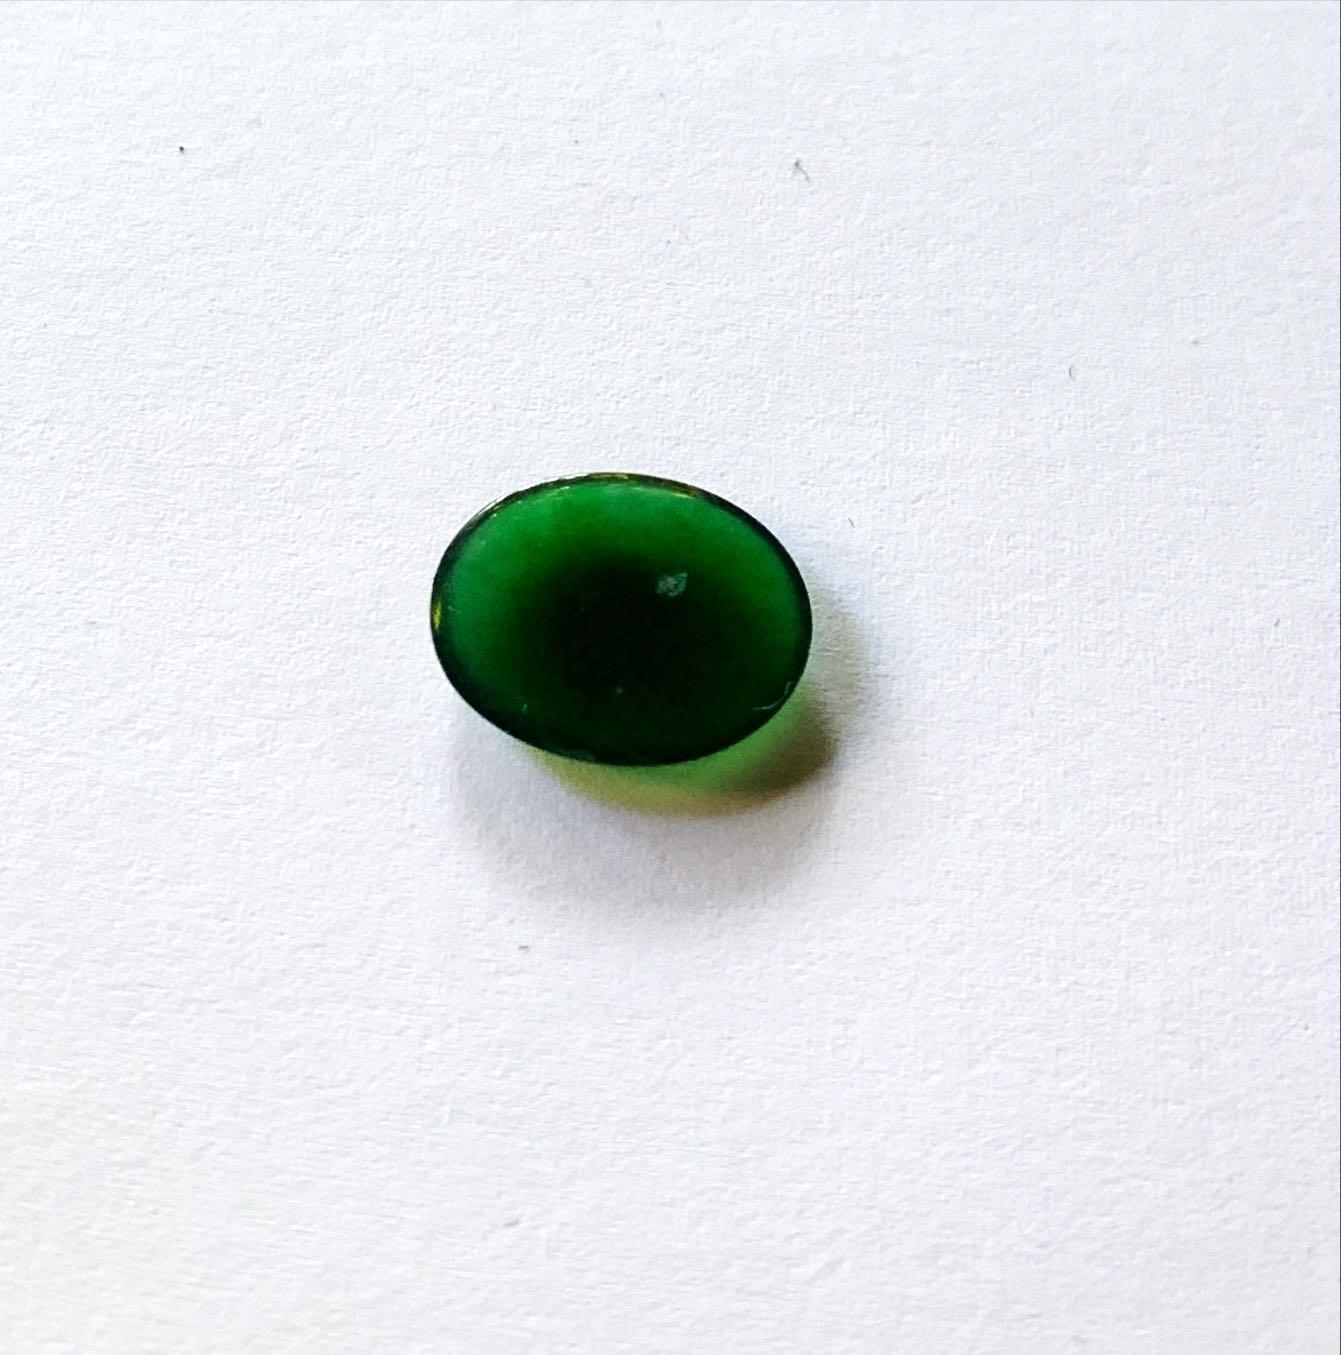 Uncut Green Rokan Myanmar Jadeite Loose Stones 5.6 ct Type A #6 For Sale